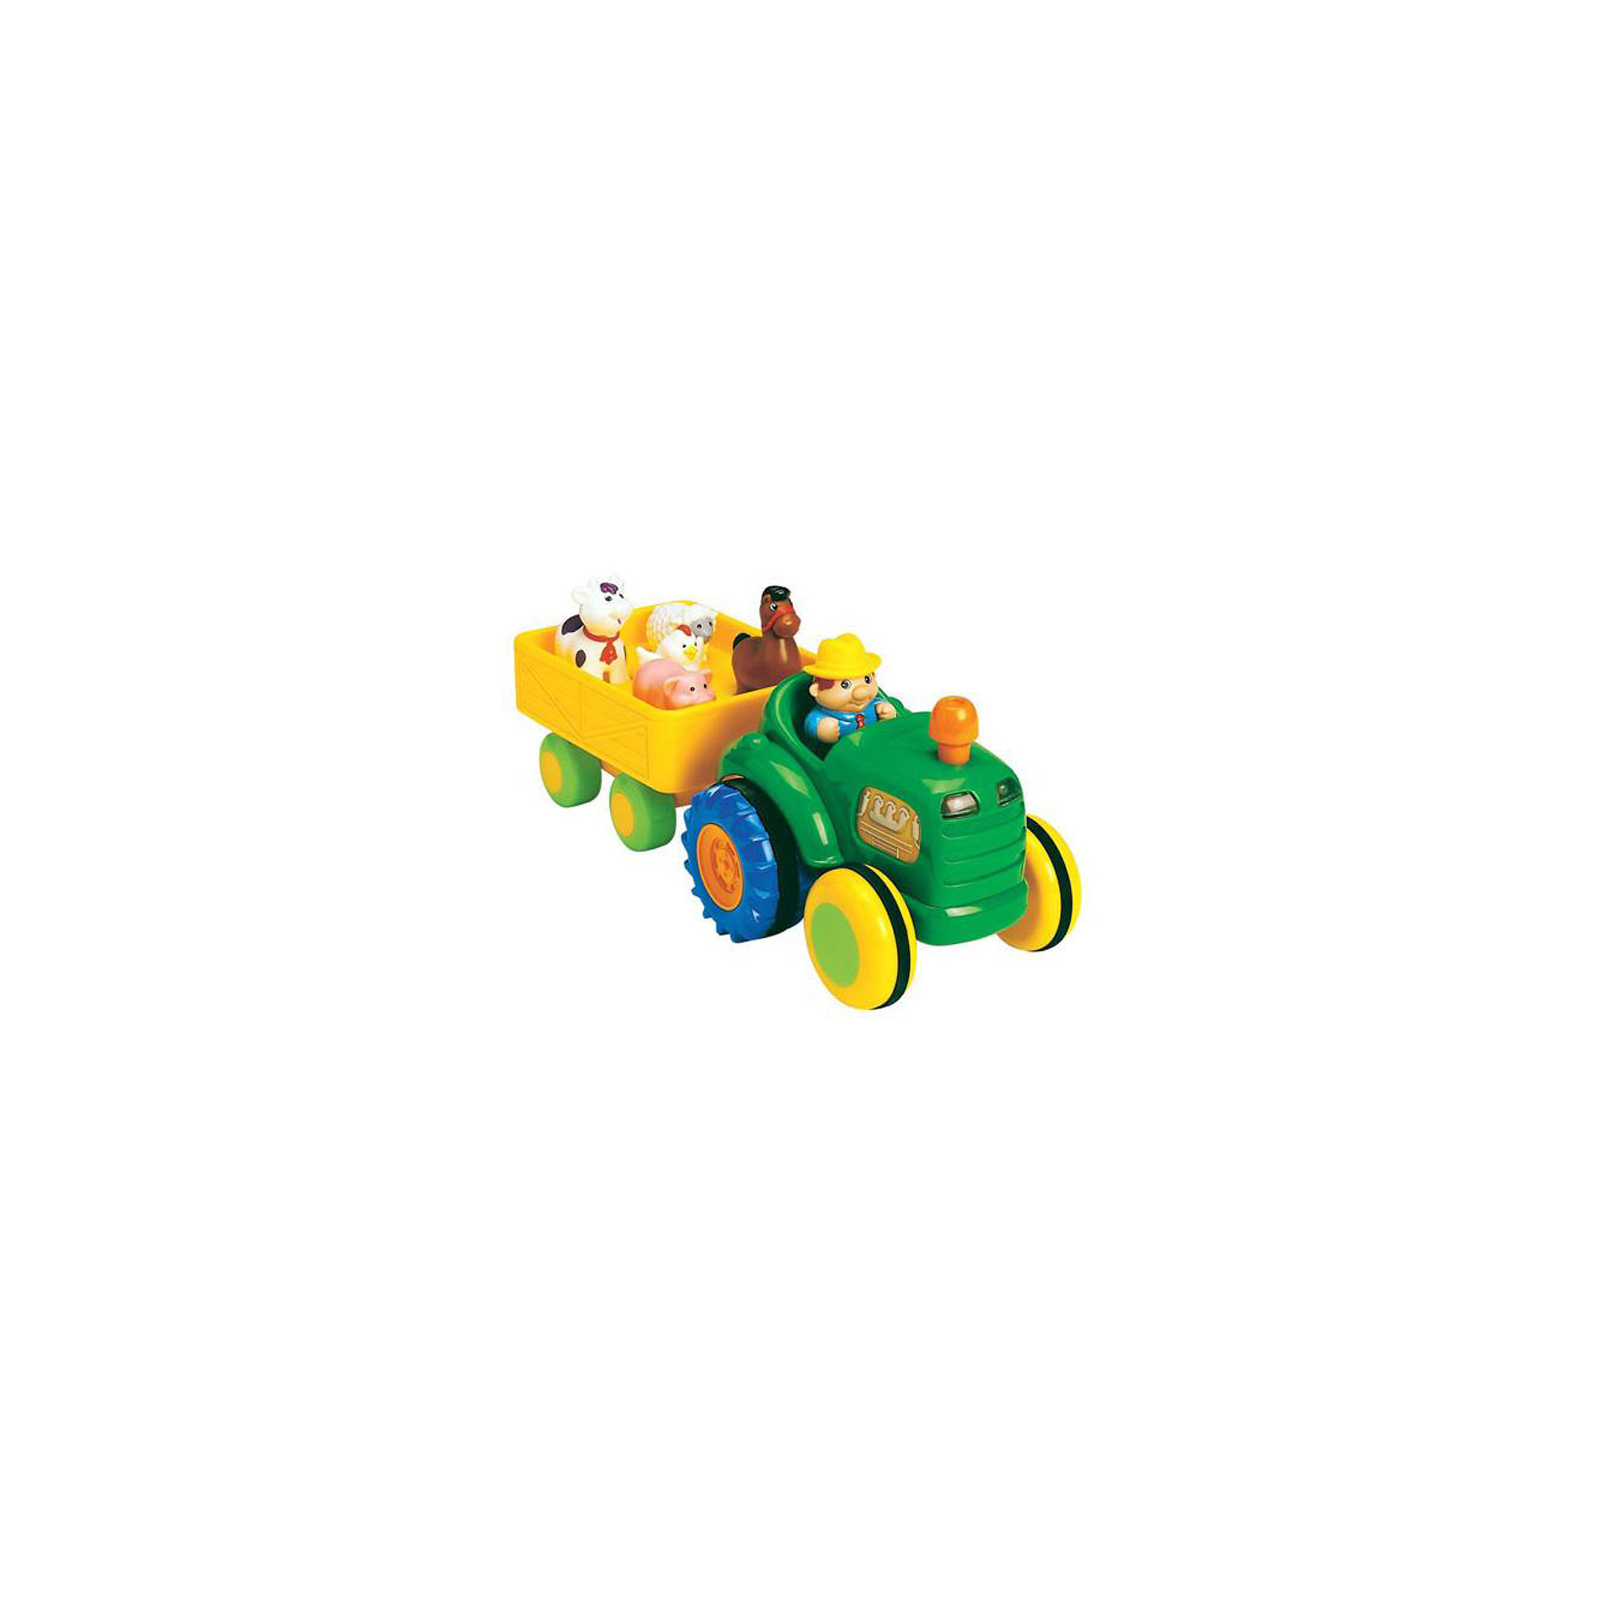 Развивающая игрушка Kiddieland Трактор с прицепом (озвучен по-украински) (024753)